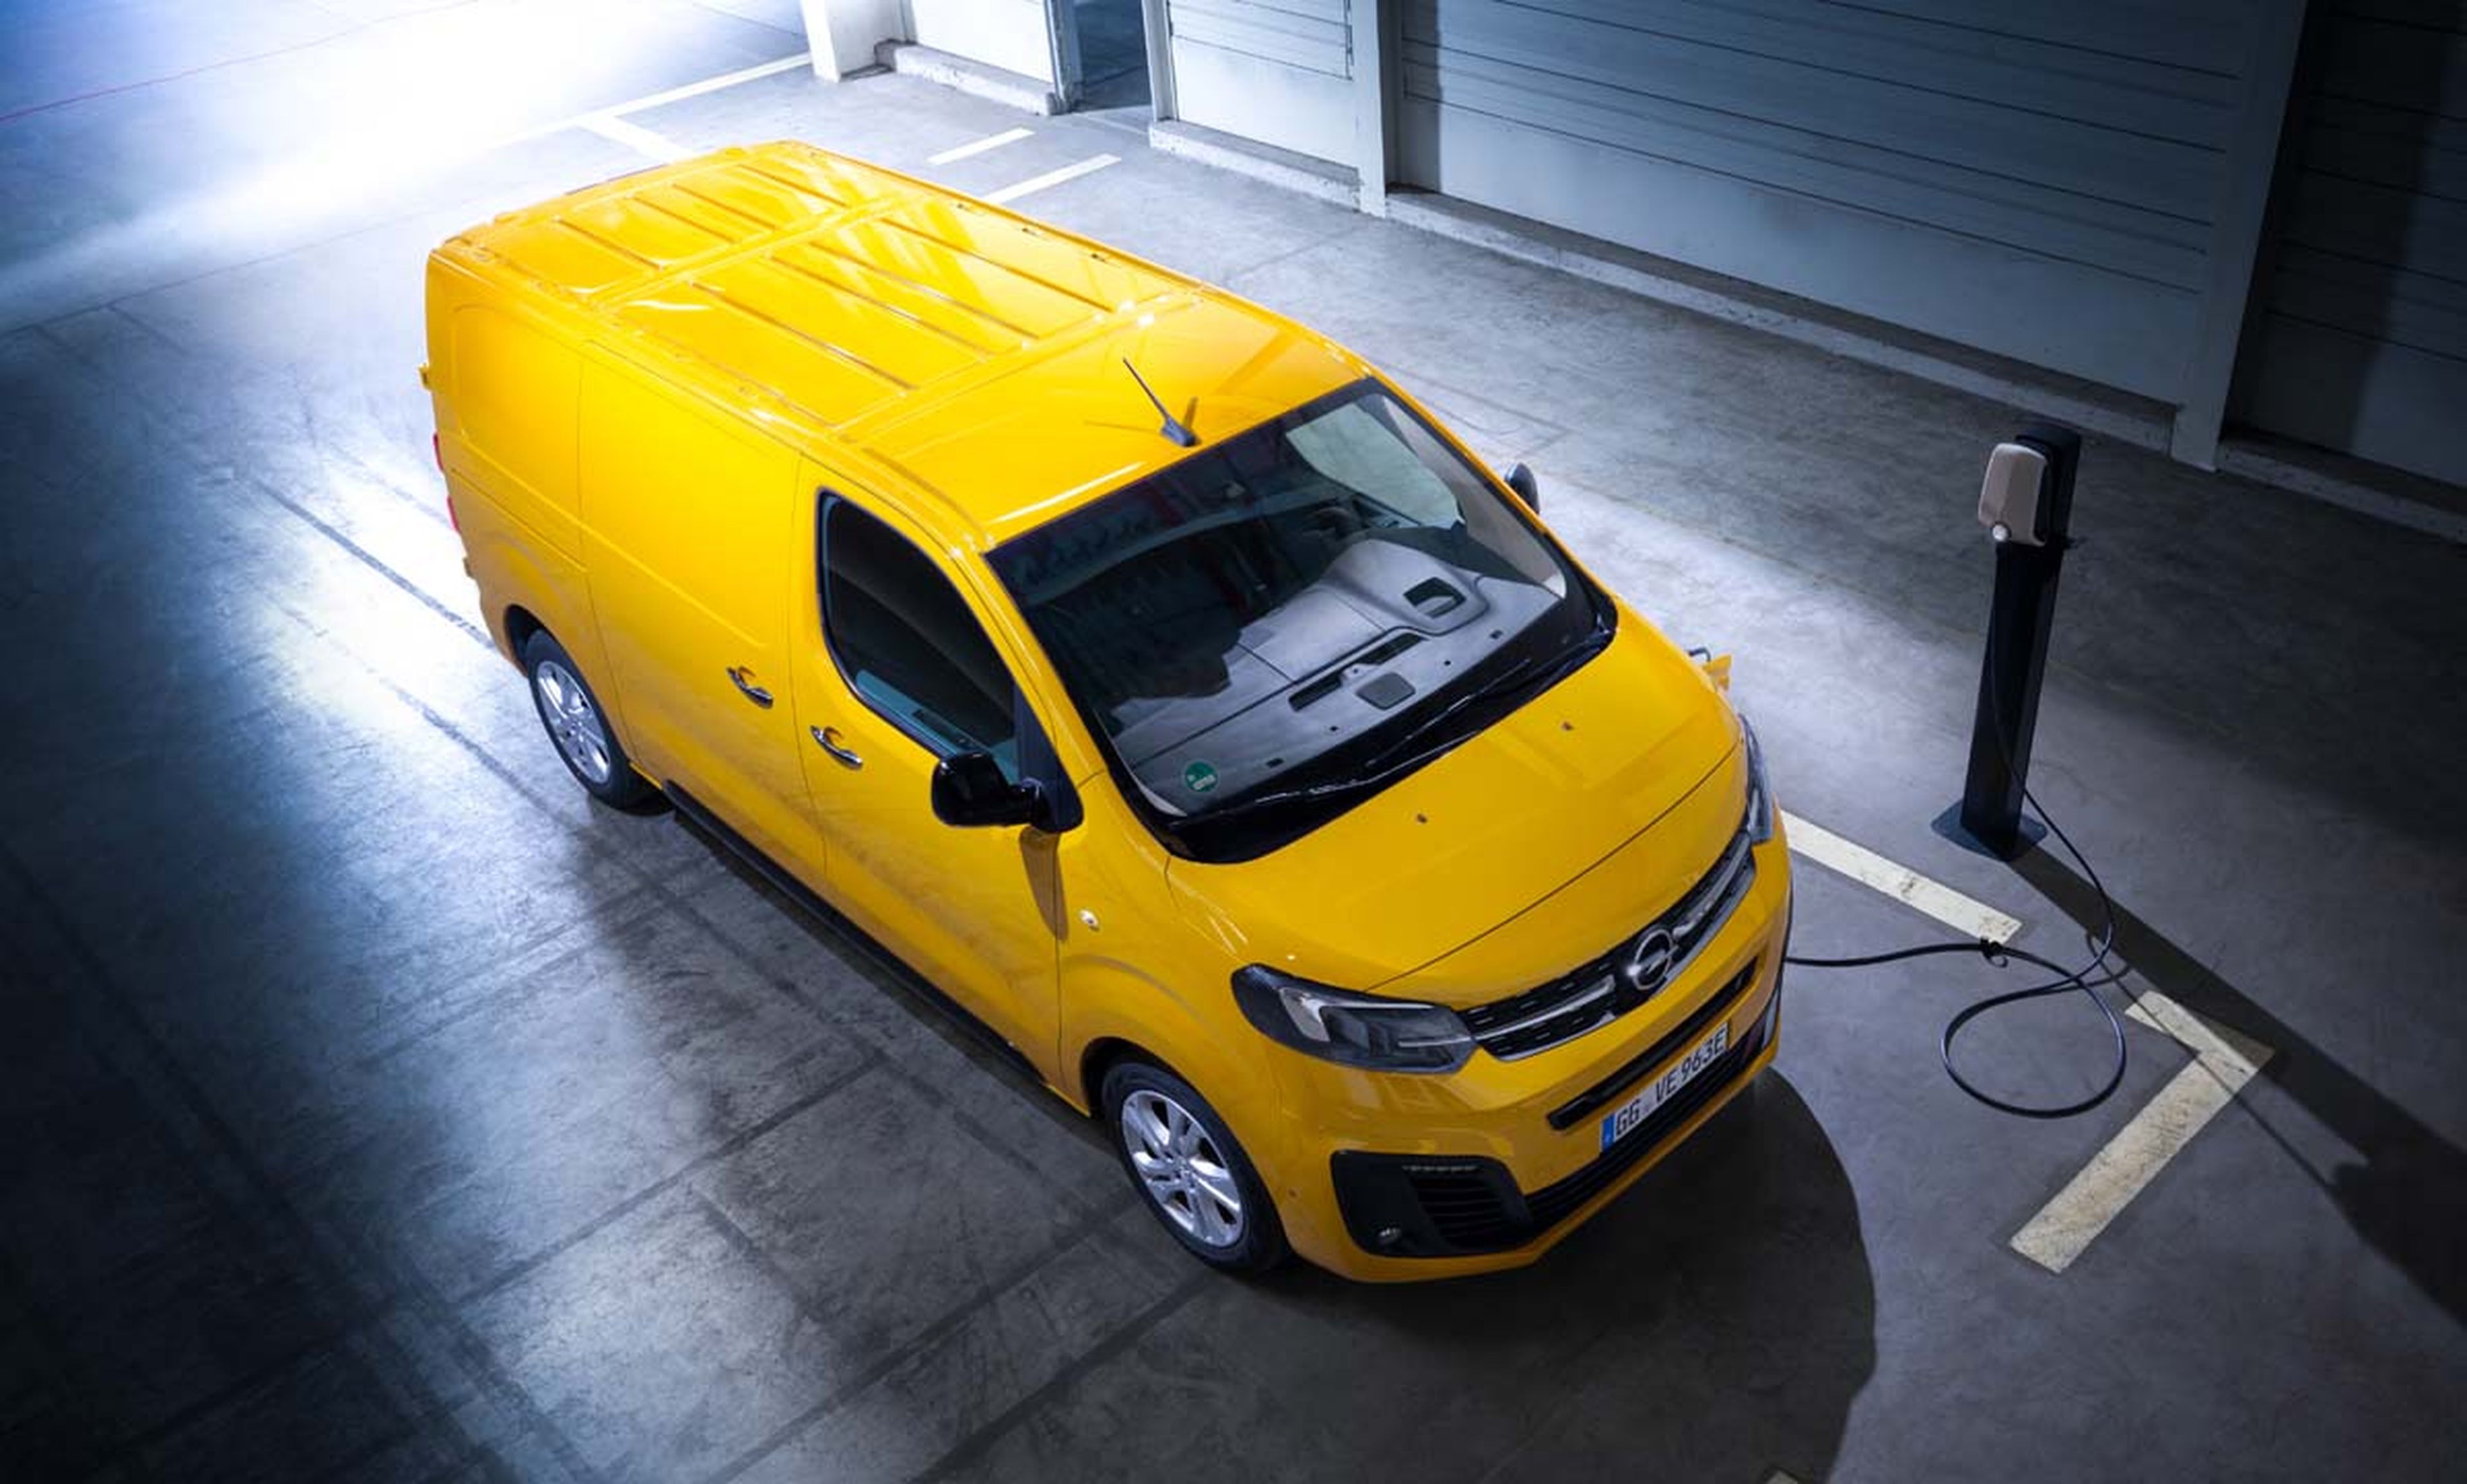 Nuevo Opel Vivaro-e, primer comercial eléctrico de la marca